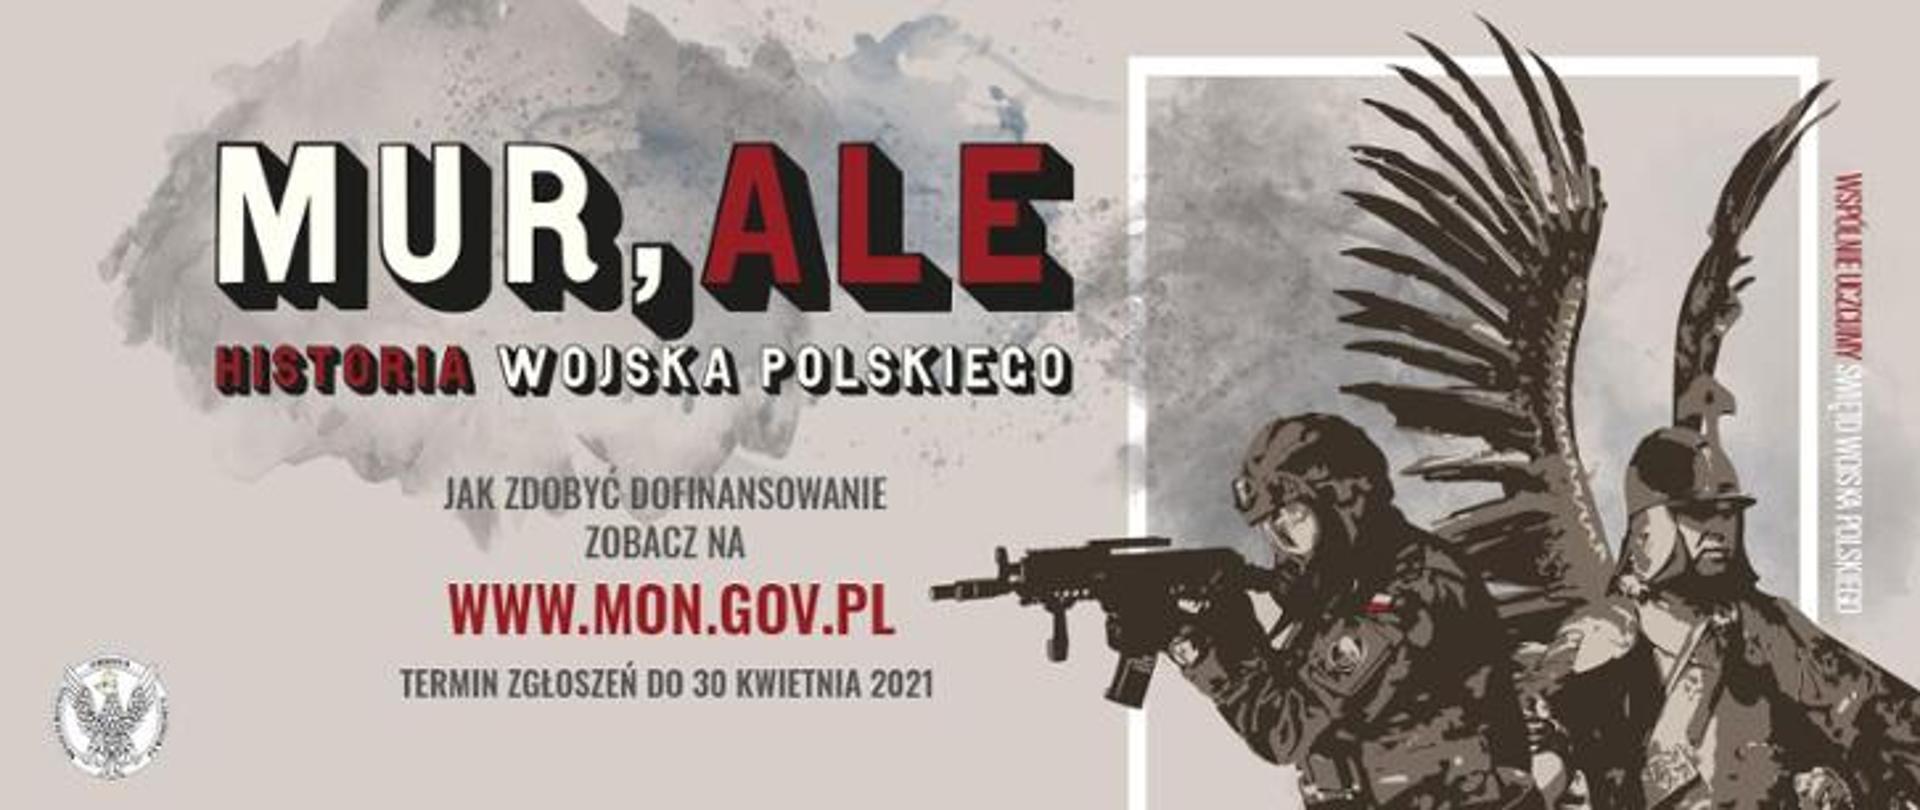 banner reklamowy z napisem: MUR,ALE HISTORIA WOJSKA POLSKIEGO, Jak zdobyć dofinansowanie zobacz na www.mon.gov.pl TERMIN ZGŁOSZEŃ DO 30 KWIETNIA 2021